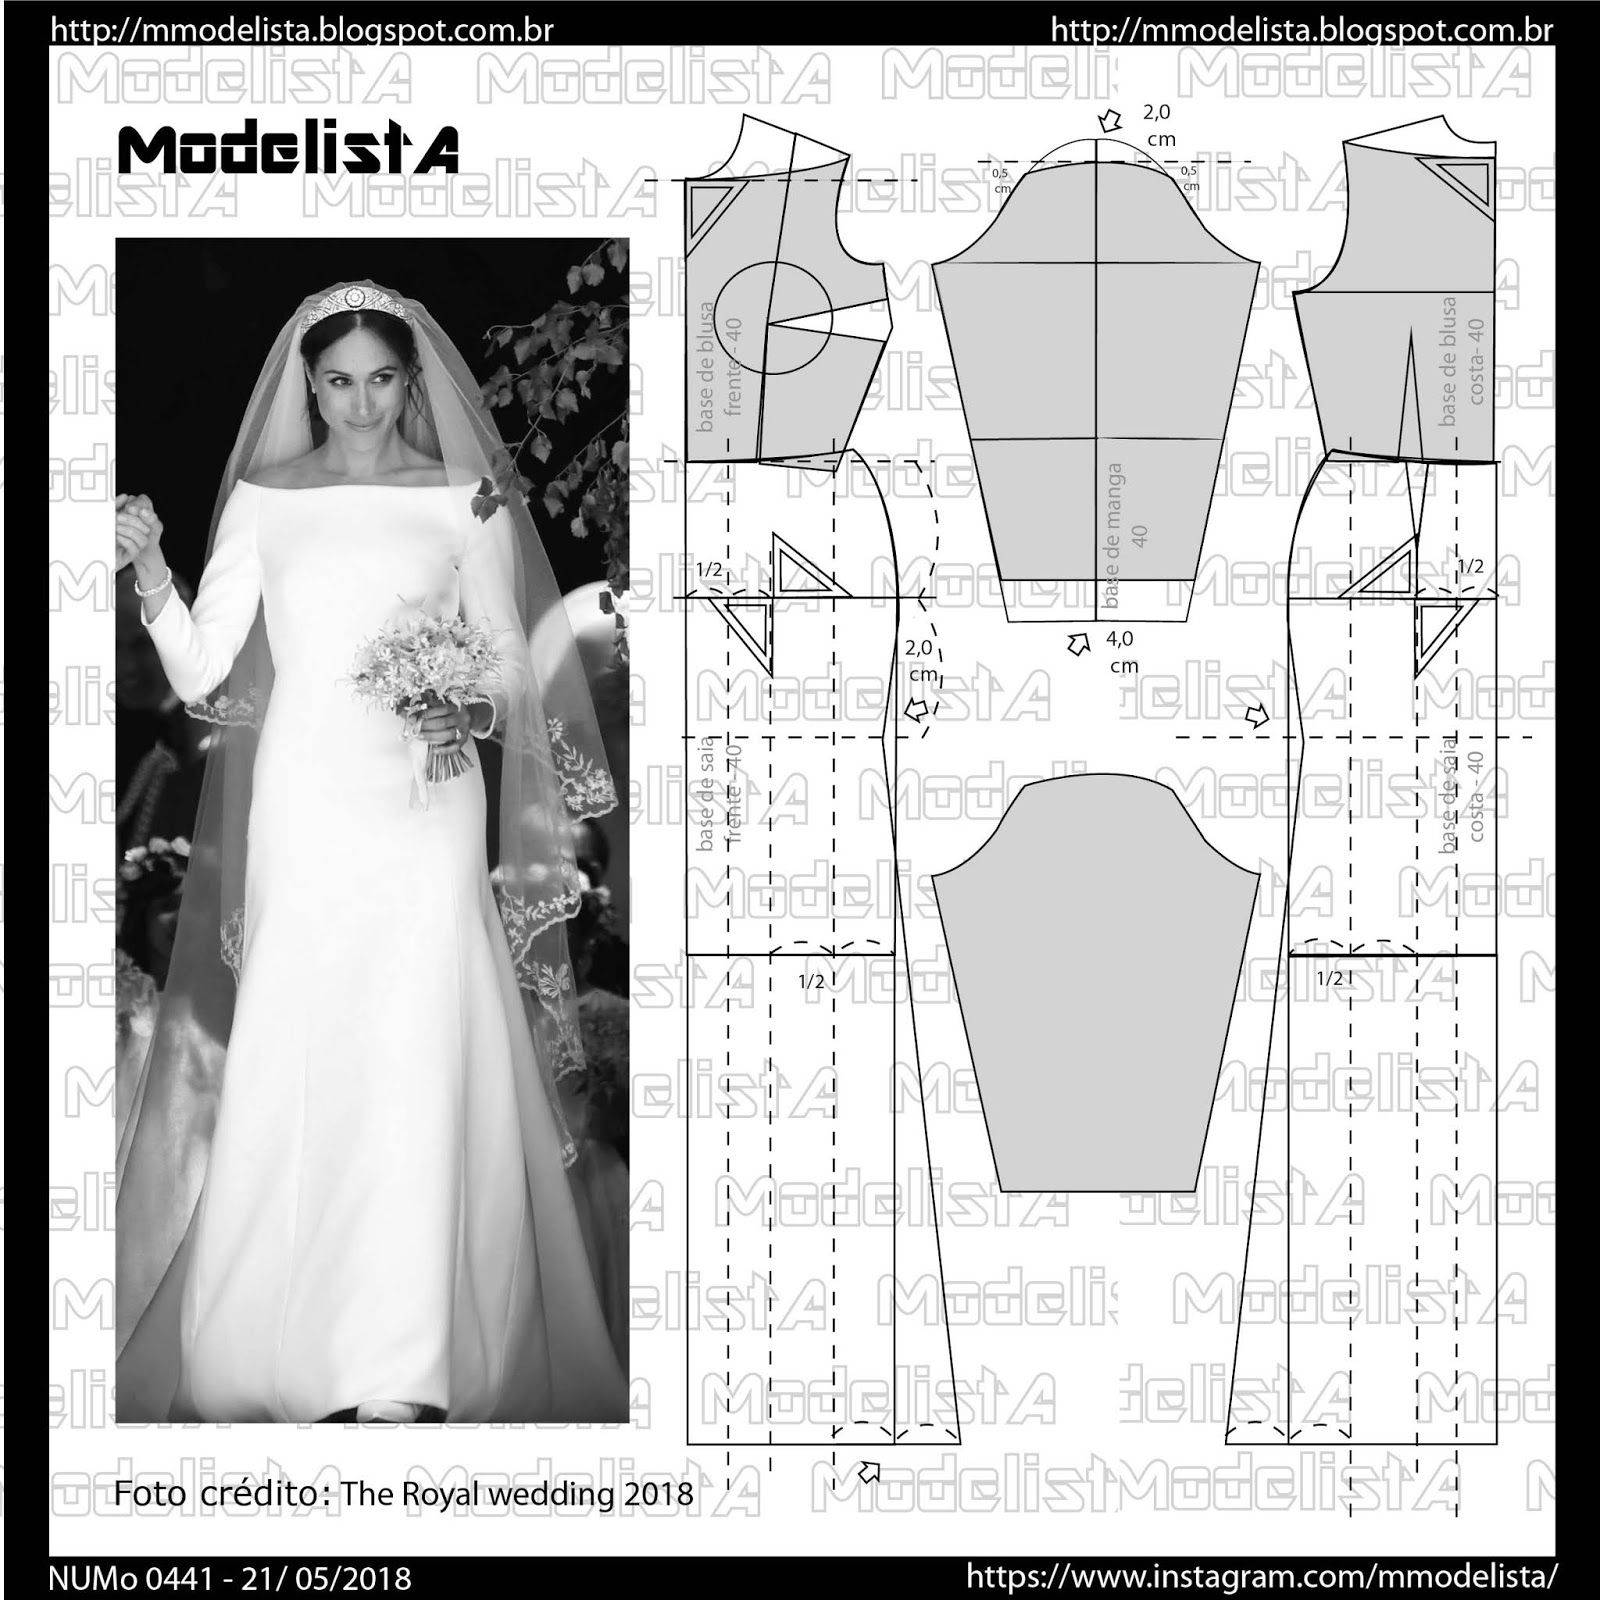 Свадебное платье: выкройка, как сшить платье, 10 стильных советов по подбору фасона свадебного наряда